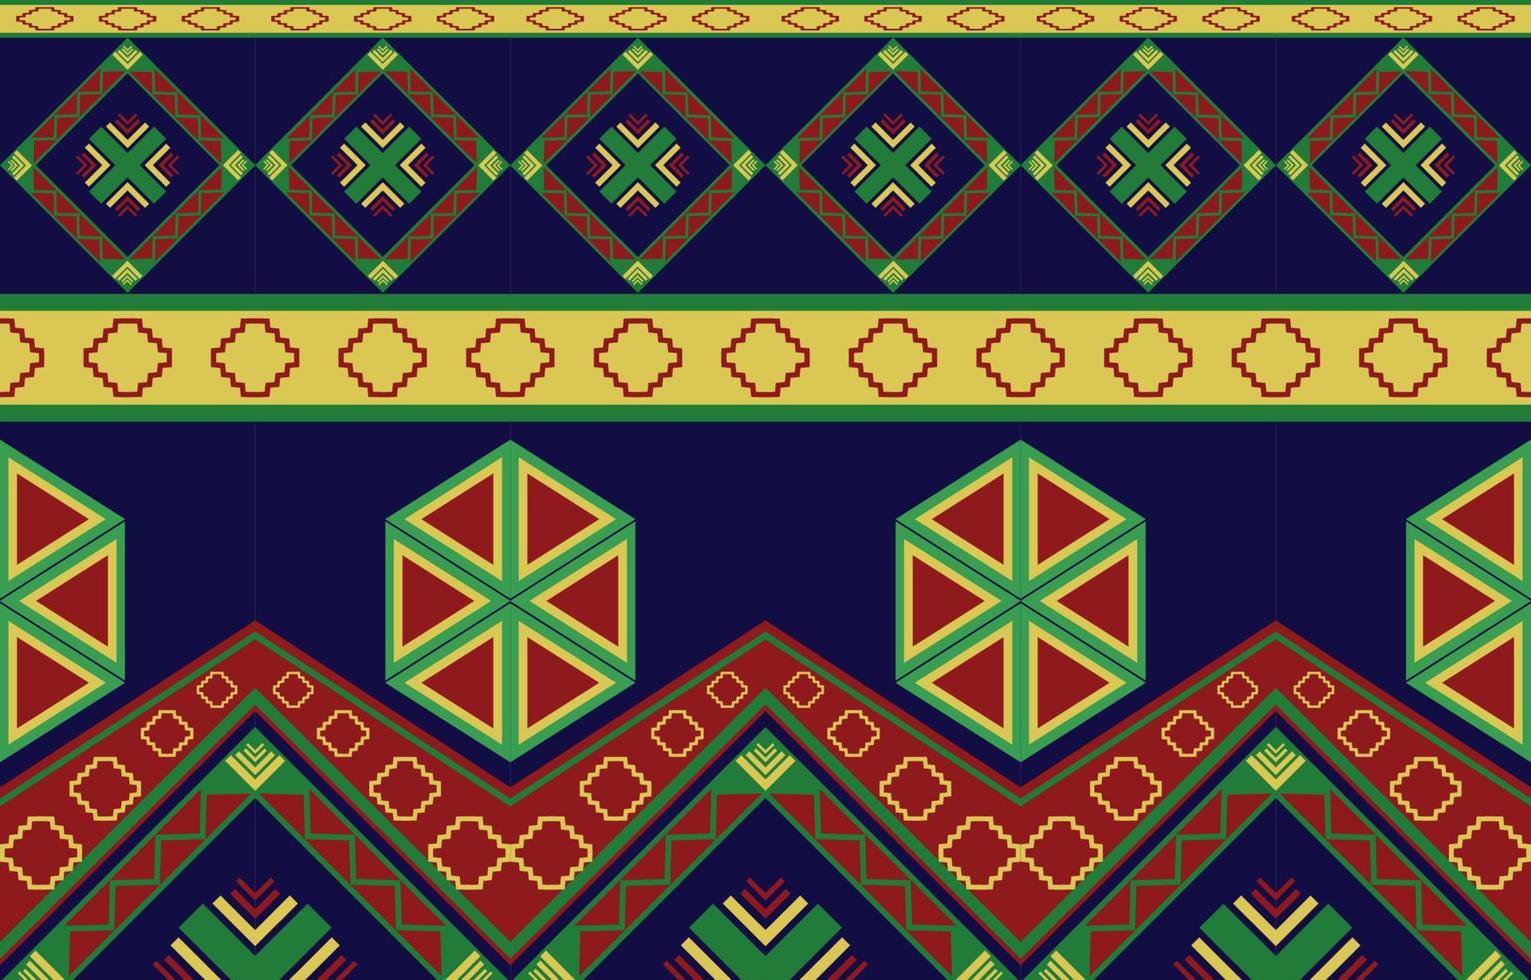 geometriska orientaliska tribal etniska mönster traditionell bakgrundsdesign för matta, tapeter, kläder, inslagning, batik, tyg, vektor illustration broderi stil.